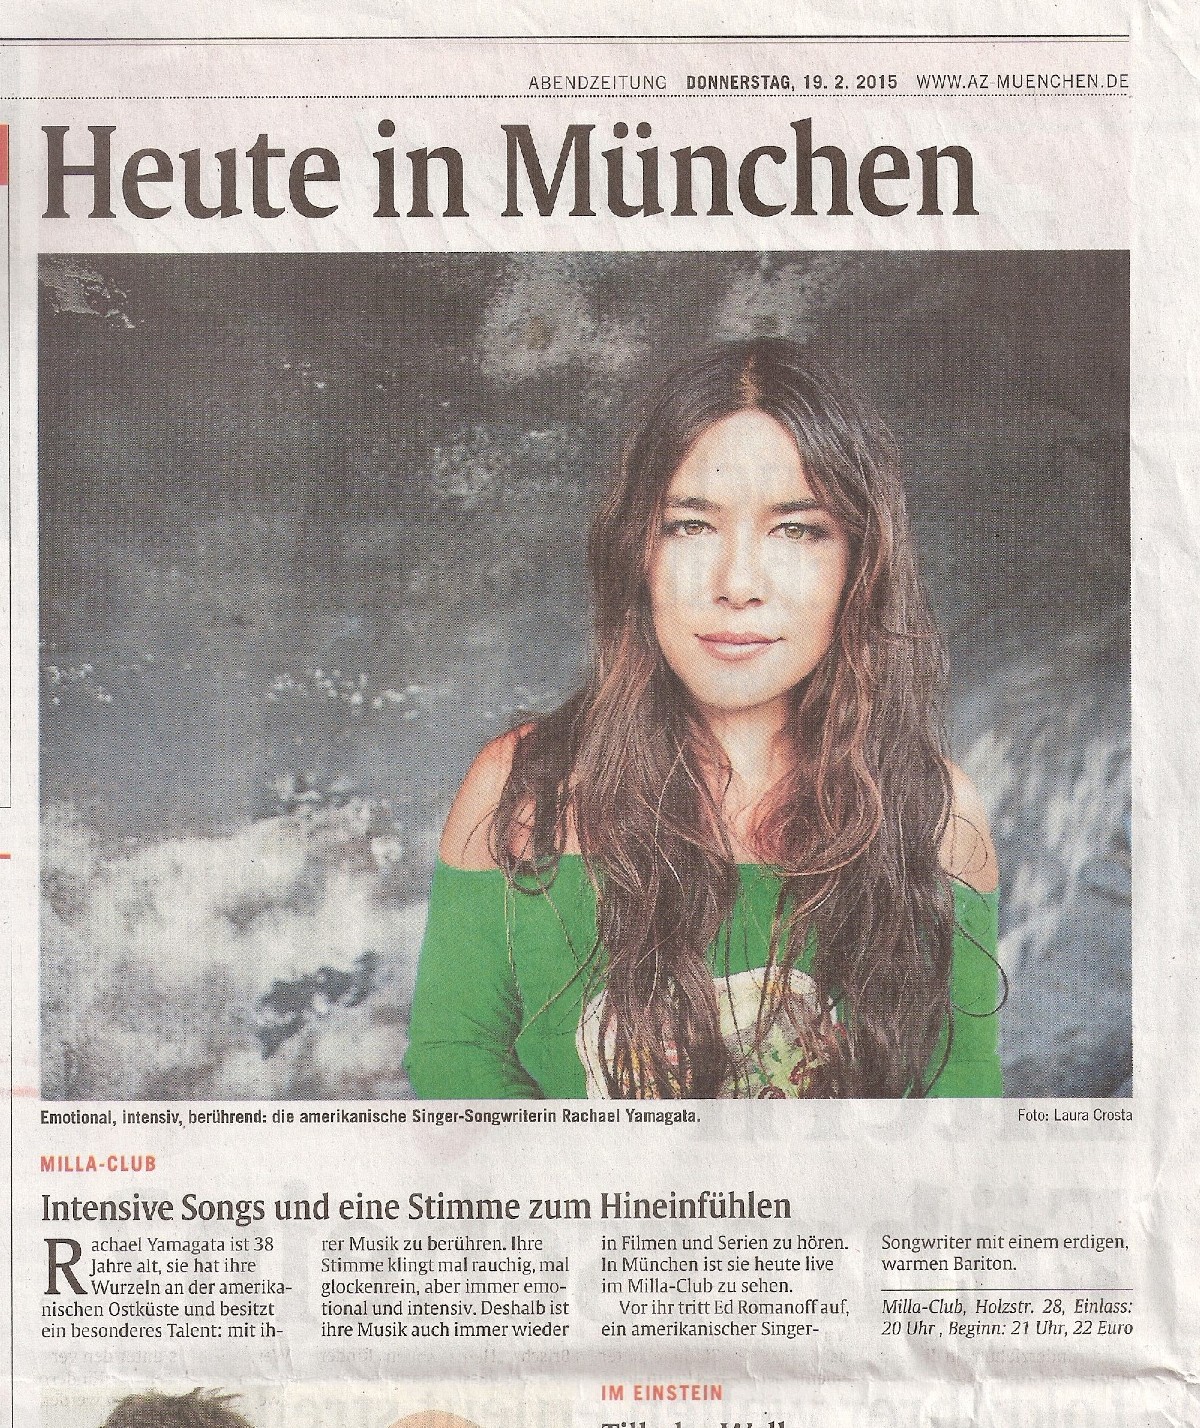 Abendzeitung, München